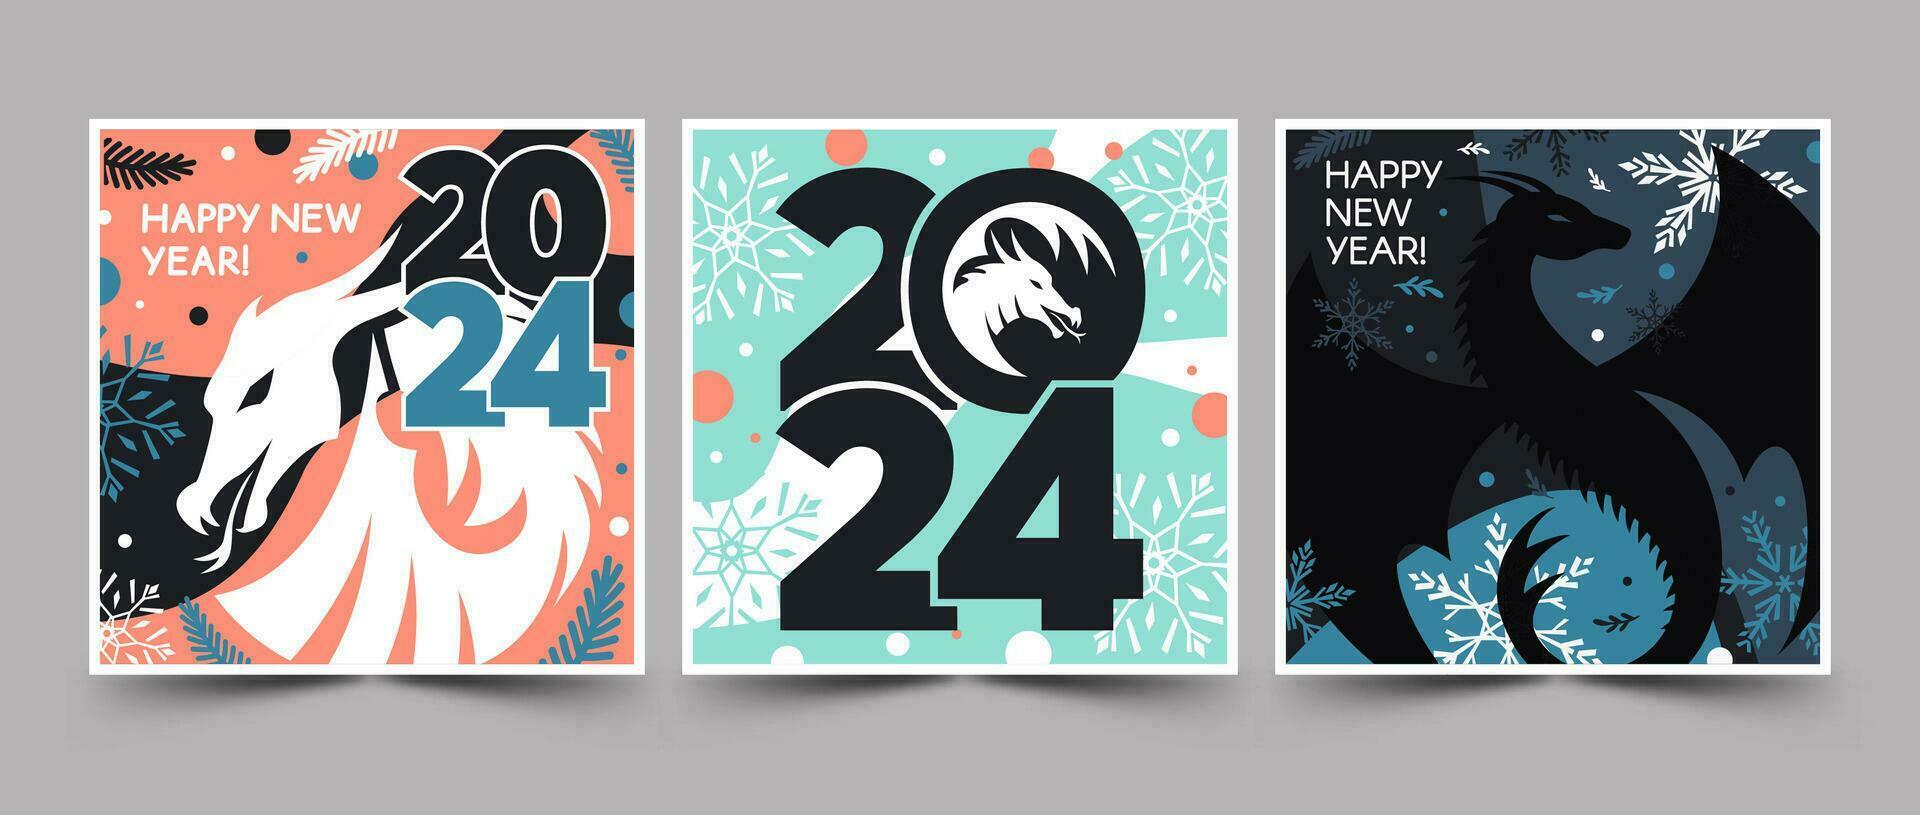 conjunto de contento nuevo año 2024 cuadrado pancartas con dragones, globos, copos de nieve, y texto en rosa, azul, verde, y negro colores. vector moderno plano ilustración.